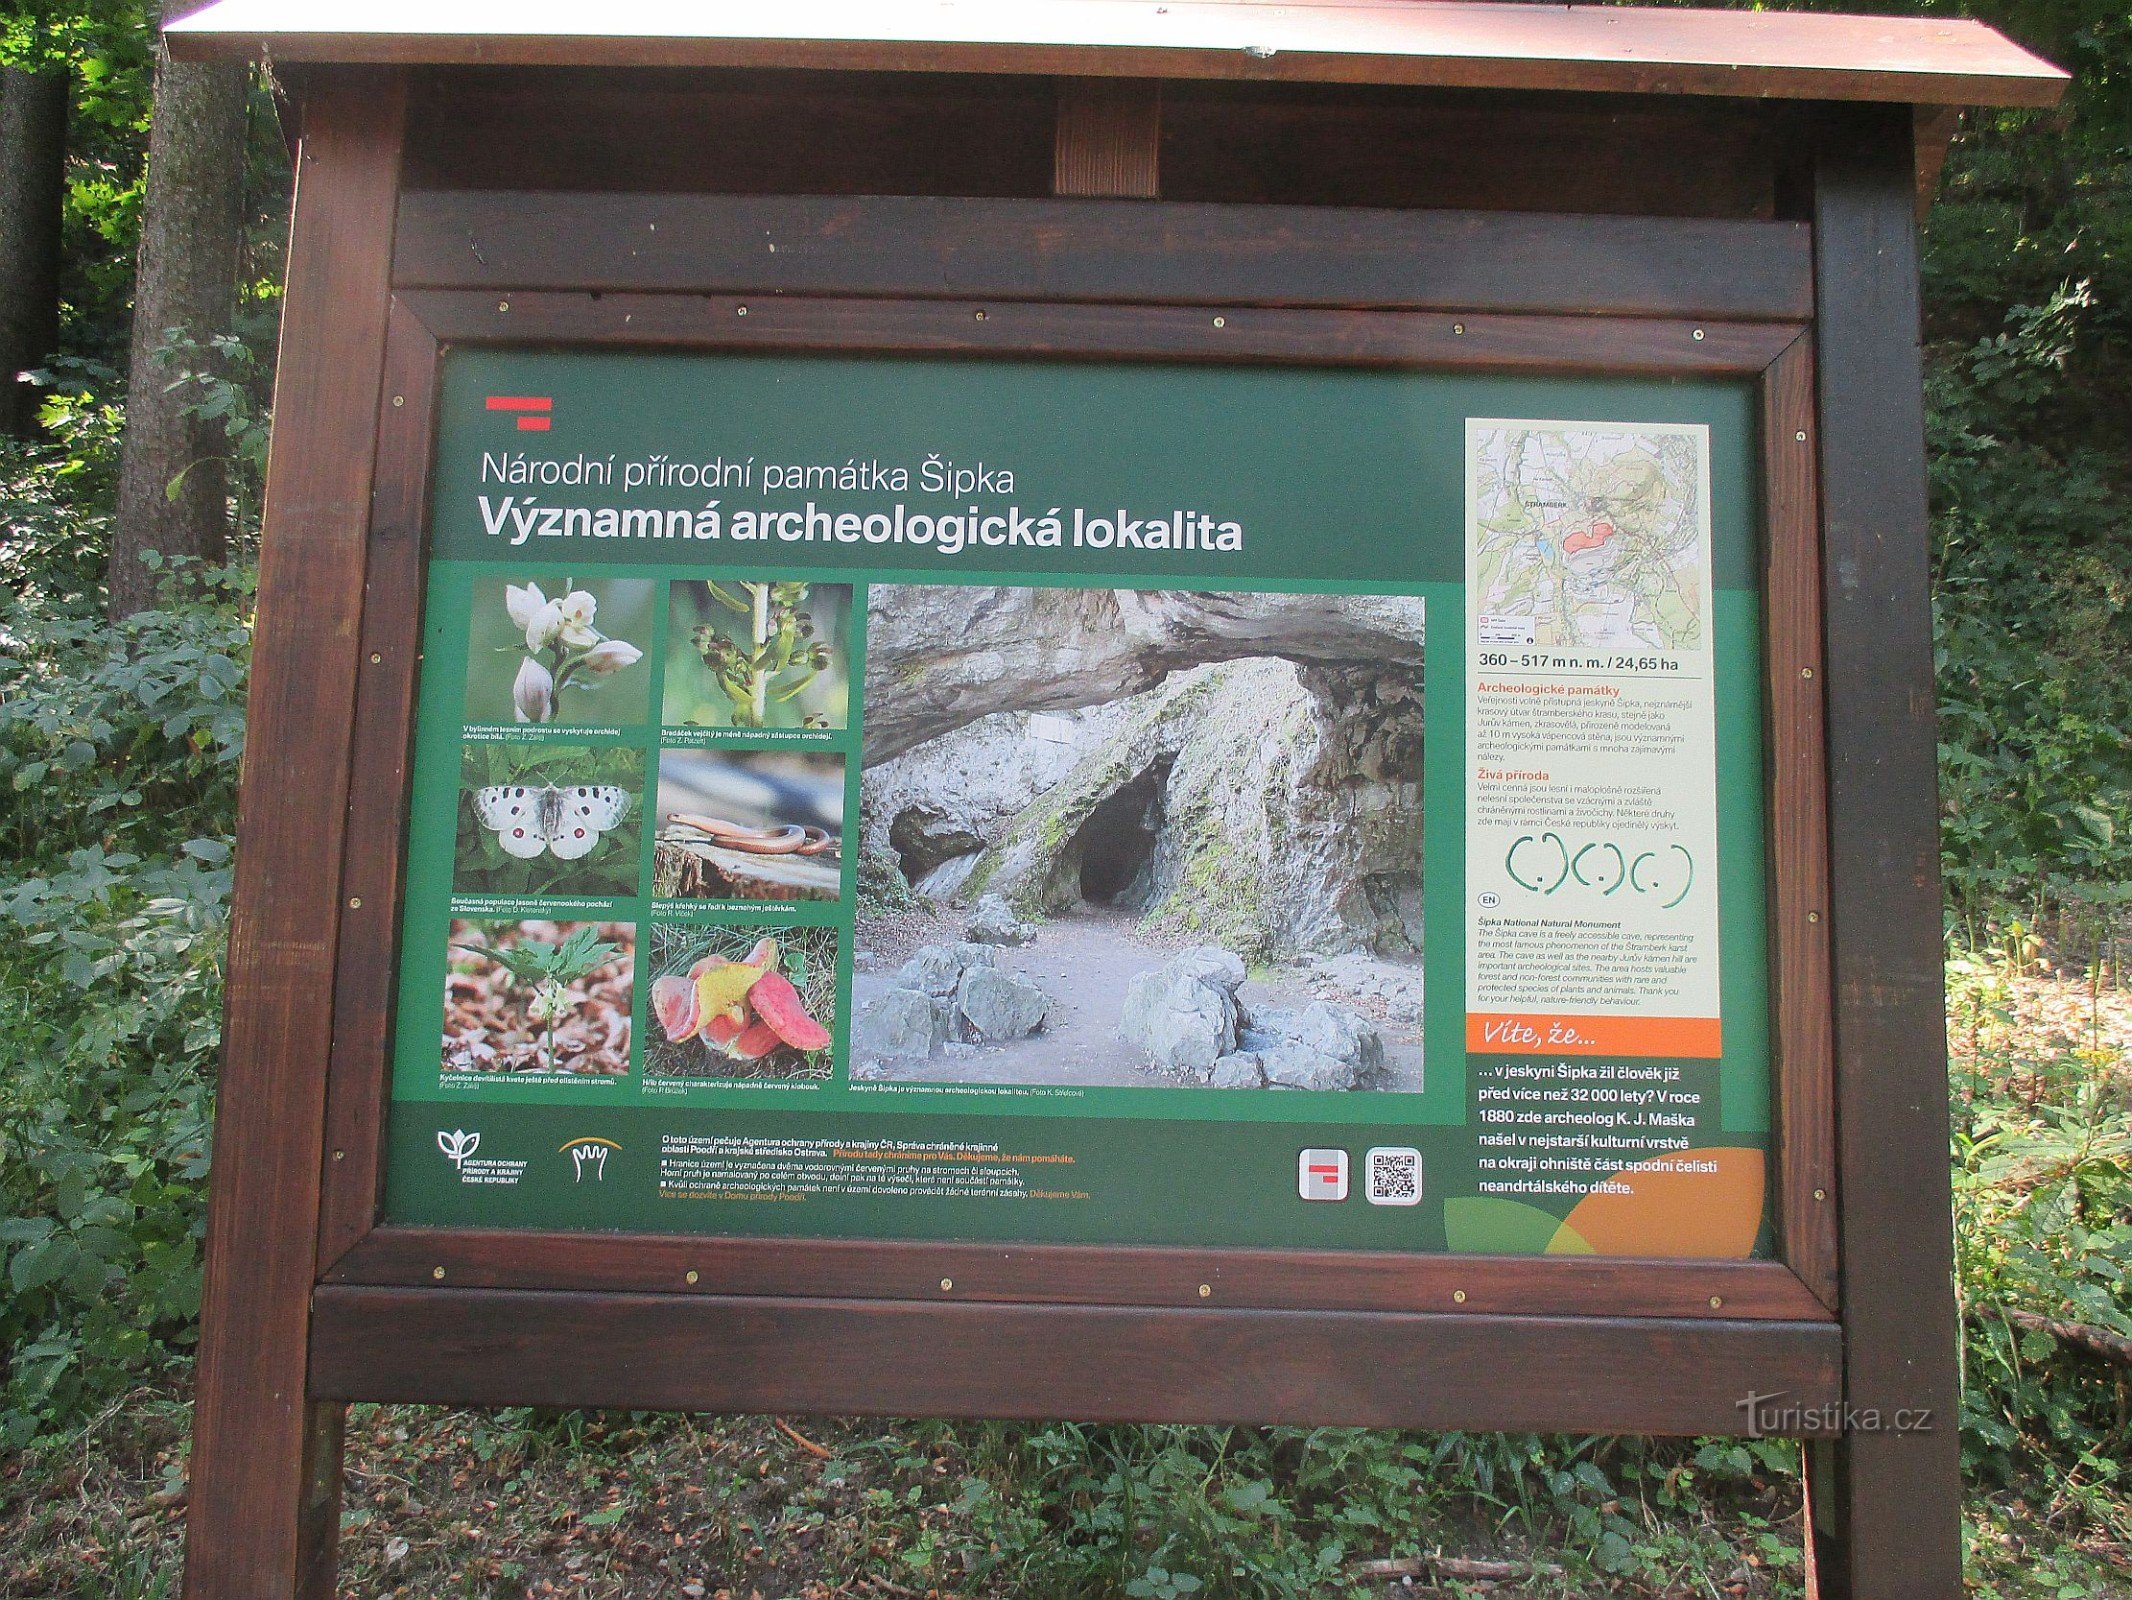 Национальный природный памятник Шипка